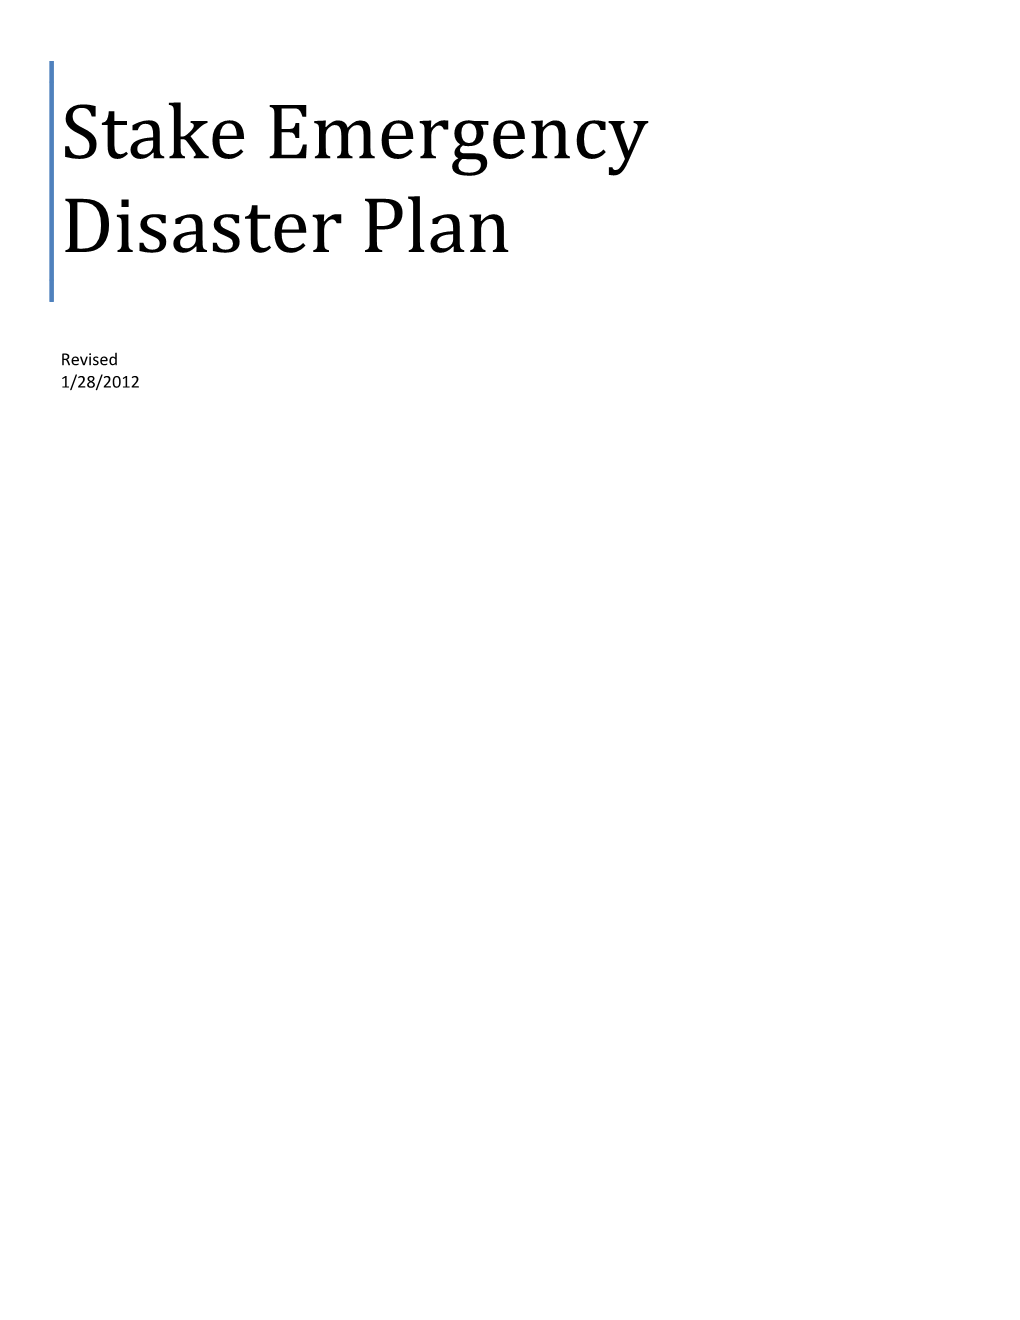 Stake Emergency Disaster Plan